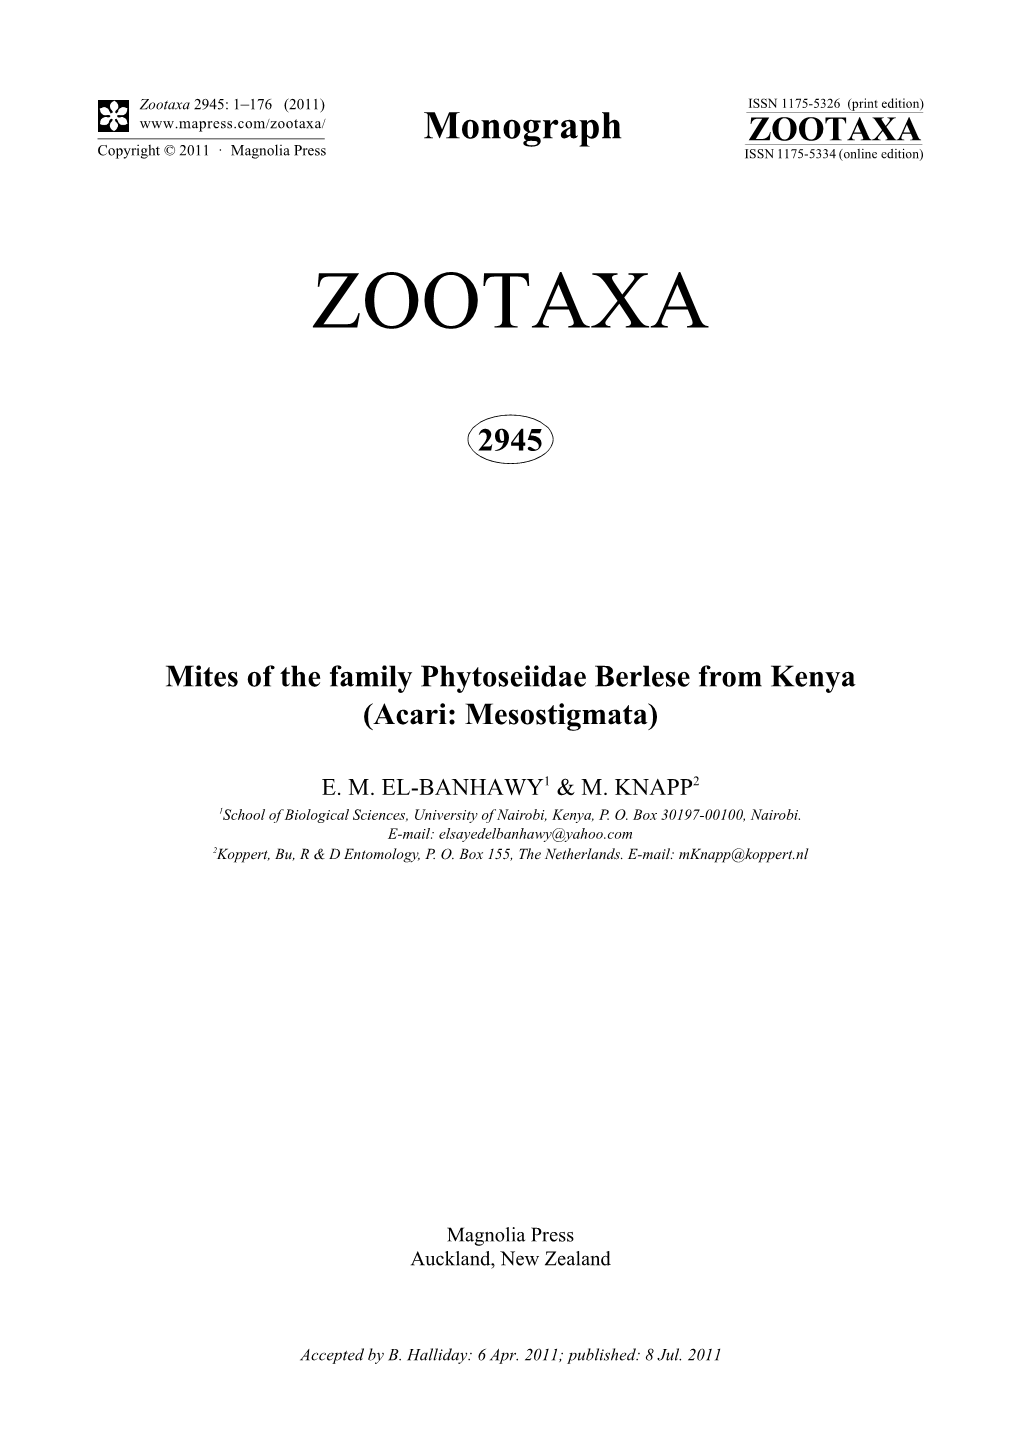 Mites of the Family Phytoseiidae Berlese from Kenya (Acari: Mesostigmata)